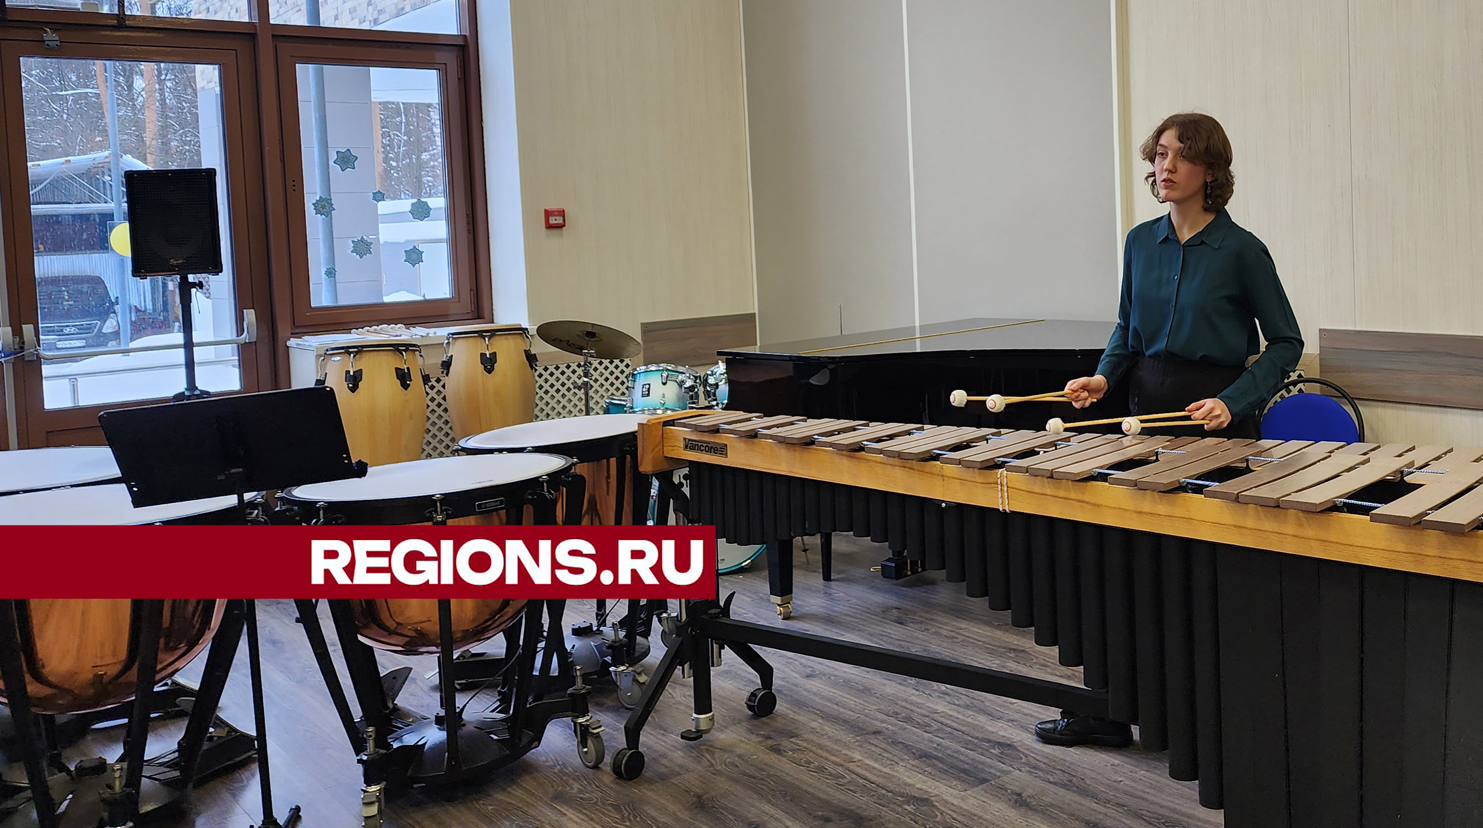 Студенты из Пушкино подняли уровень игры на маримбе благодаря советам легендарного музыканта